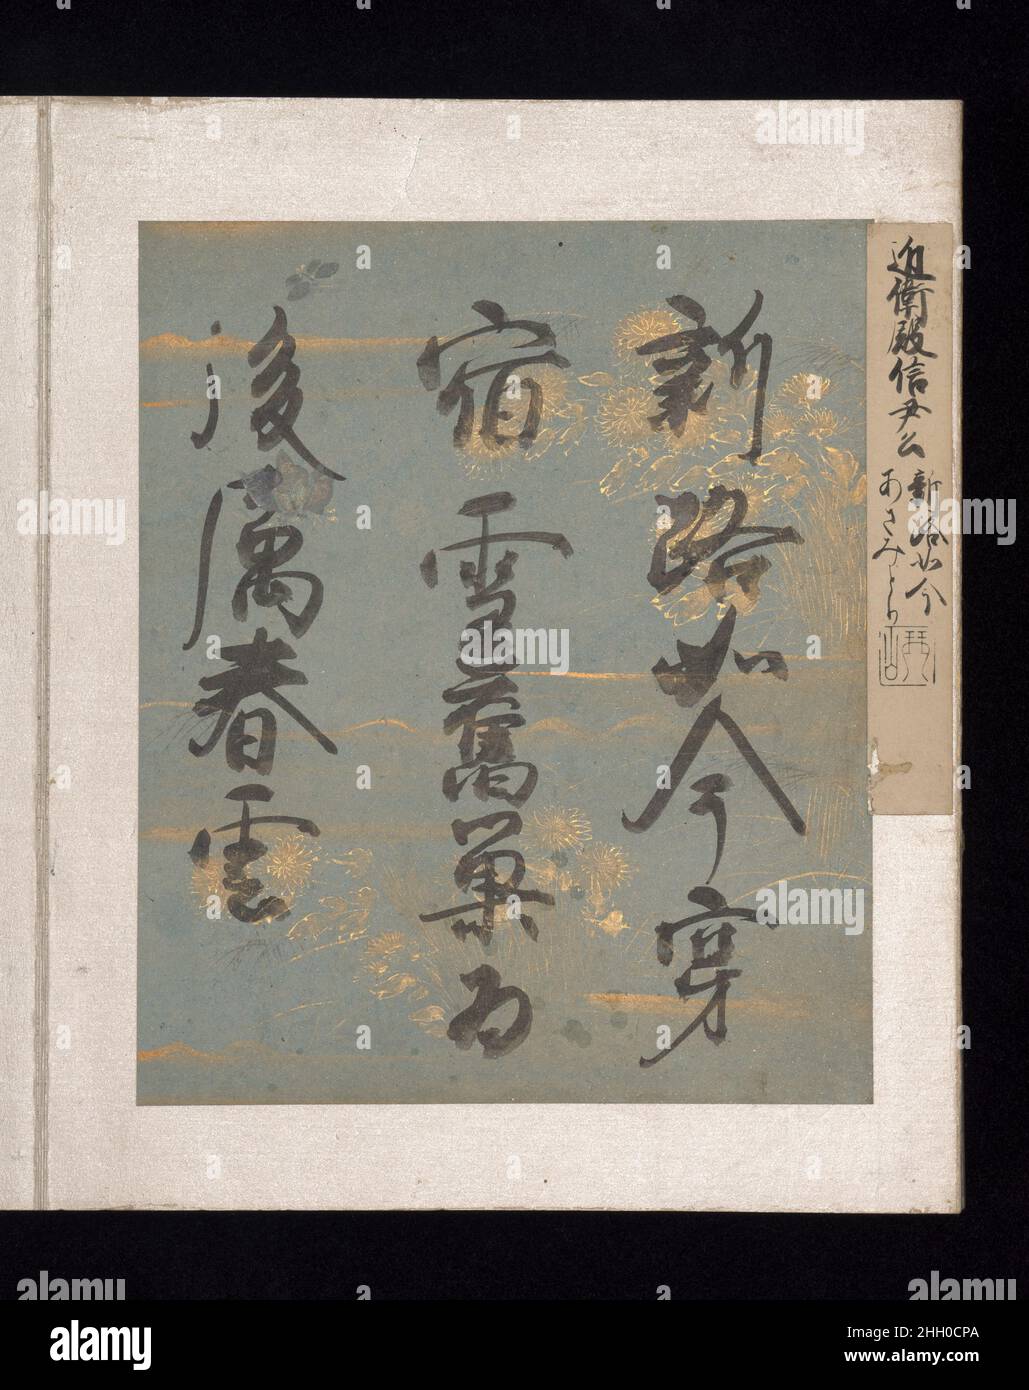 Album di Poesie giapponesi e cinesi a cantare i primi 17th Century Calligraphy di Konoe Nobutada Konoe Nobutada, un cortigiano-calligrafo famoso per il suo audace, espressivo, E la scrittura a mano idiosincratica, ha scritto i fogli decorati di poesia (shikishi) per un album che comprende selezioni da poesie giapponesi e cinesi a Sing, compilato circa 1013 dal cortigiano-poeta Fujiwara no Kint? (966–1041). Questa era sicuramente una delle più ampiamente studiate e citate antologie poetiche disponibili intorno al tempo Murasaki Shikibu stava creando il suo racconto complesso, che è intrecciato con 795 waka (trentuno-sillabe ver Foto Stock